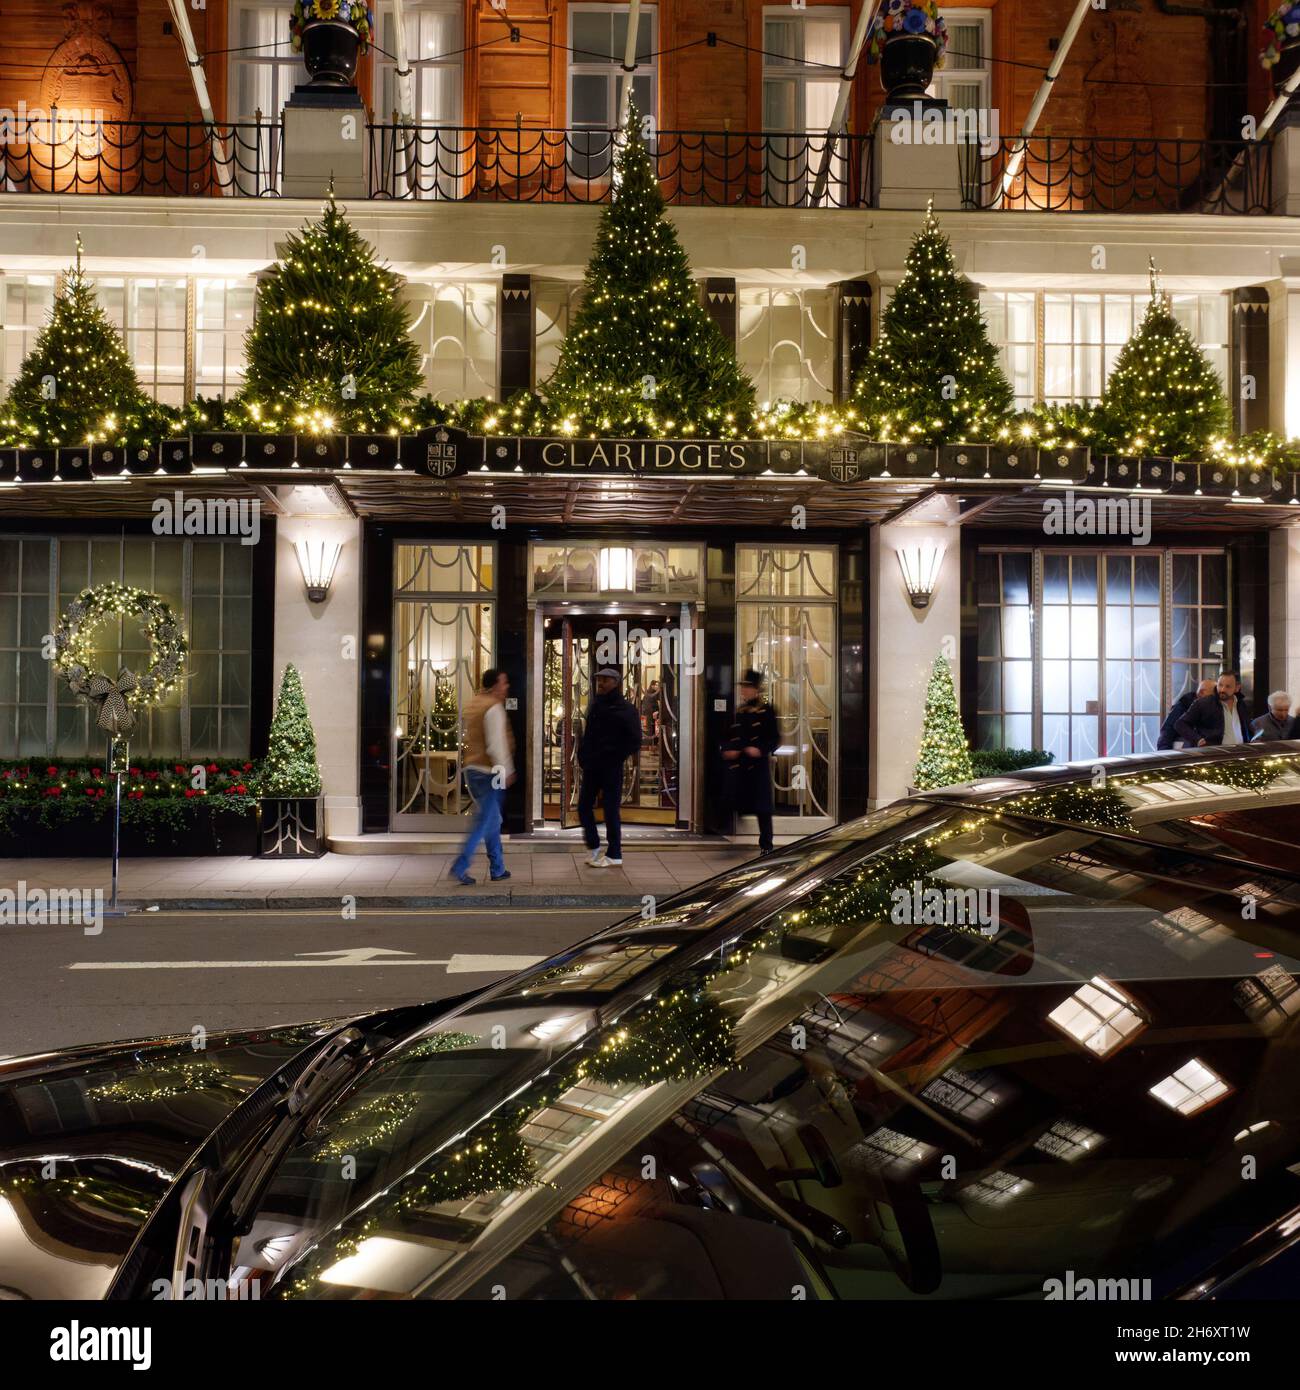 Londra, Greater London, Inghilterra, novembre 13 2021: Claridges Hotel 5 stelle di lusso facciata di Natale con luci riflesse in un parabrezza auto. Foto Stock